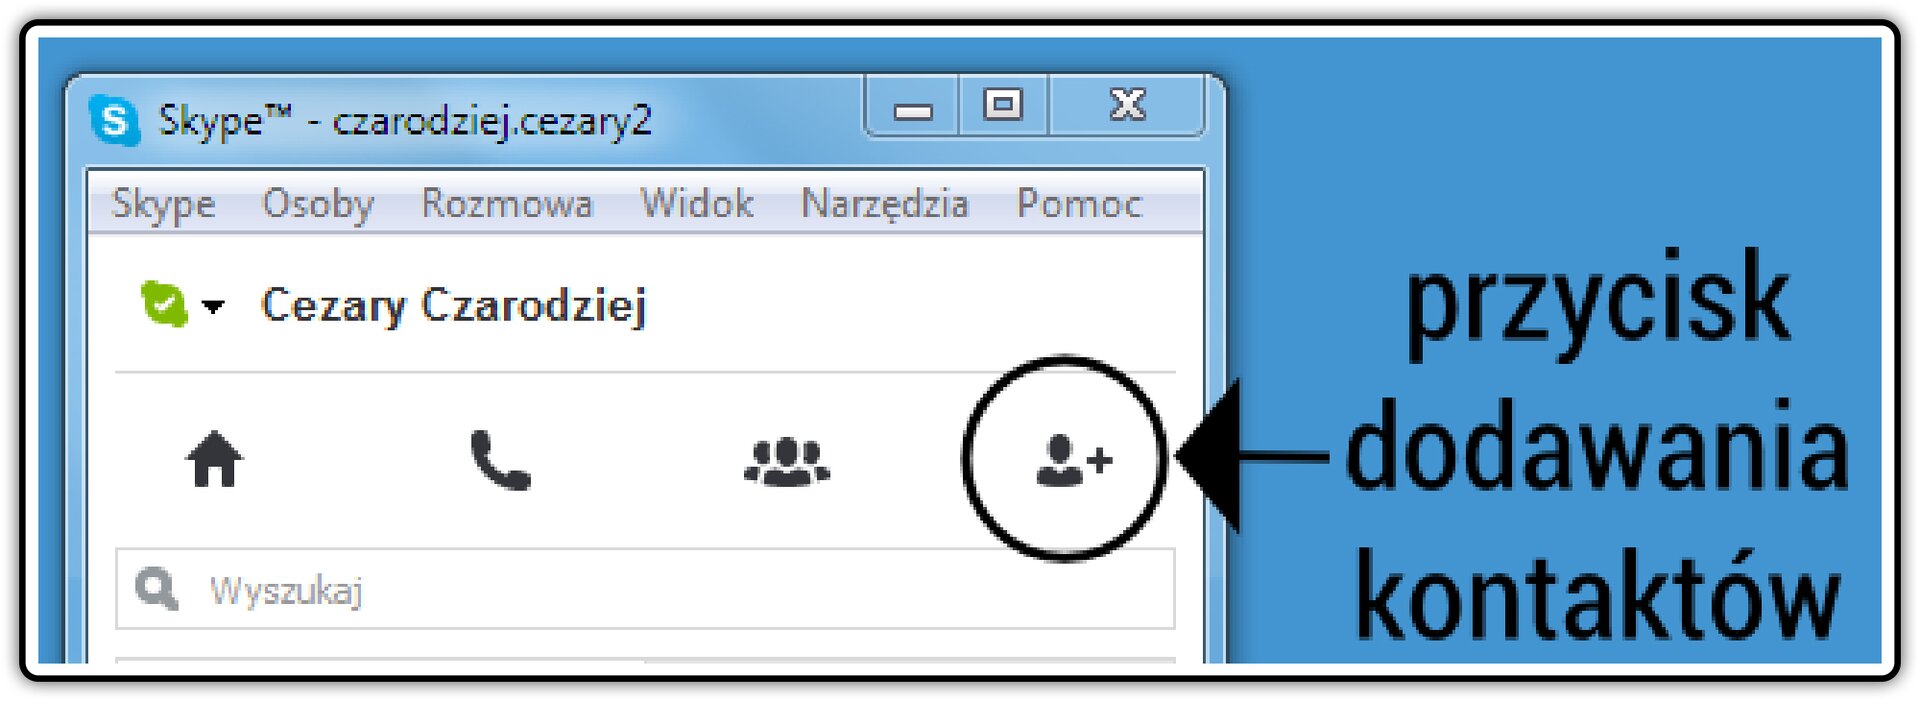 Zrzut fragmentu okna komunikatora Skype z zaznaczonym przyciskiem dodawania kontaktów